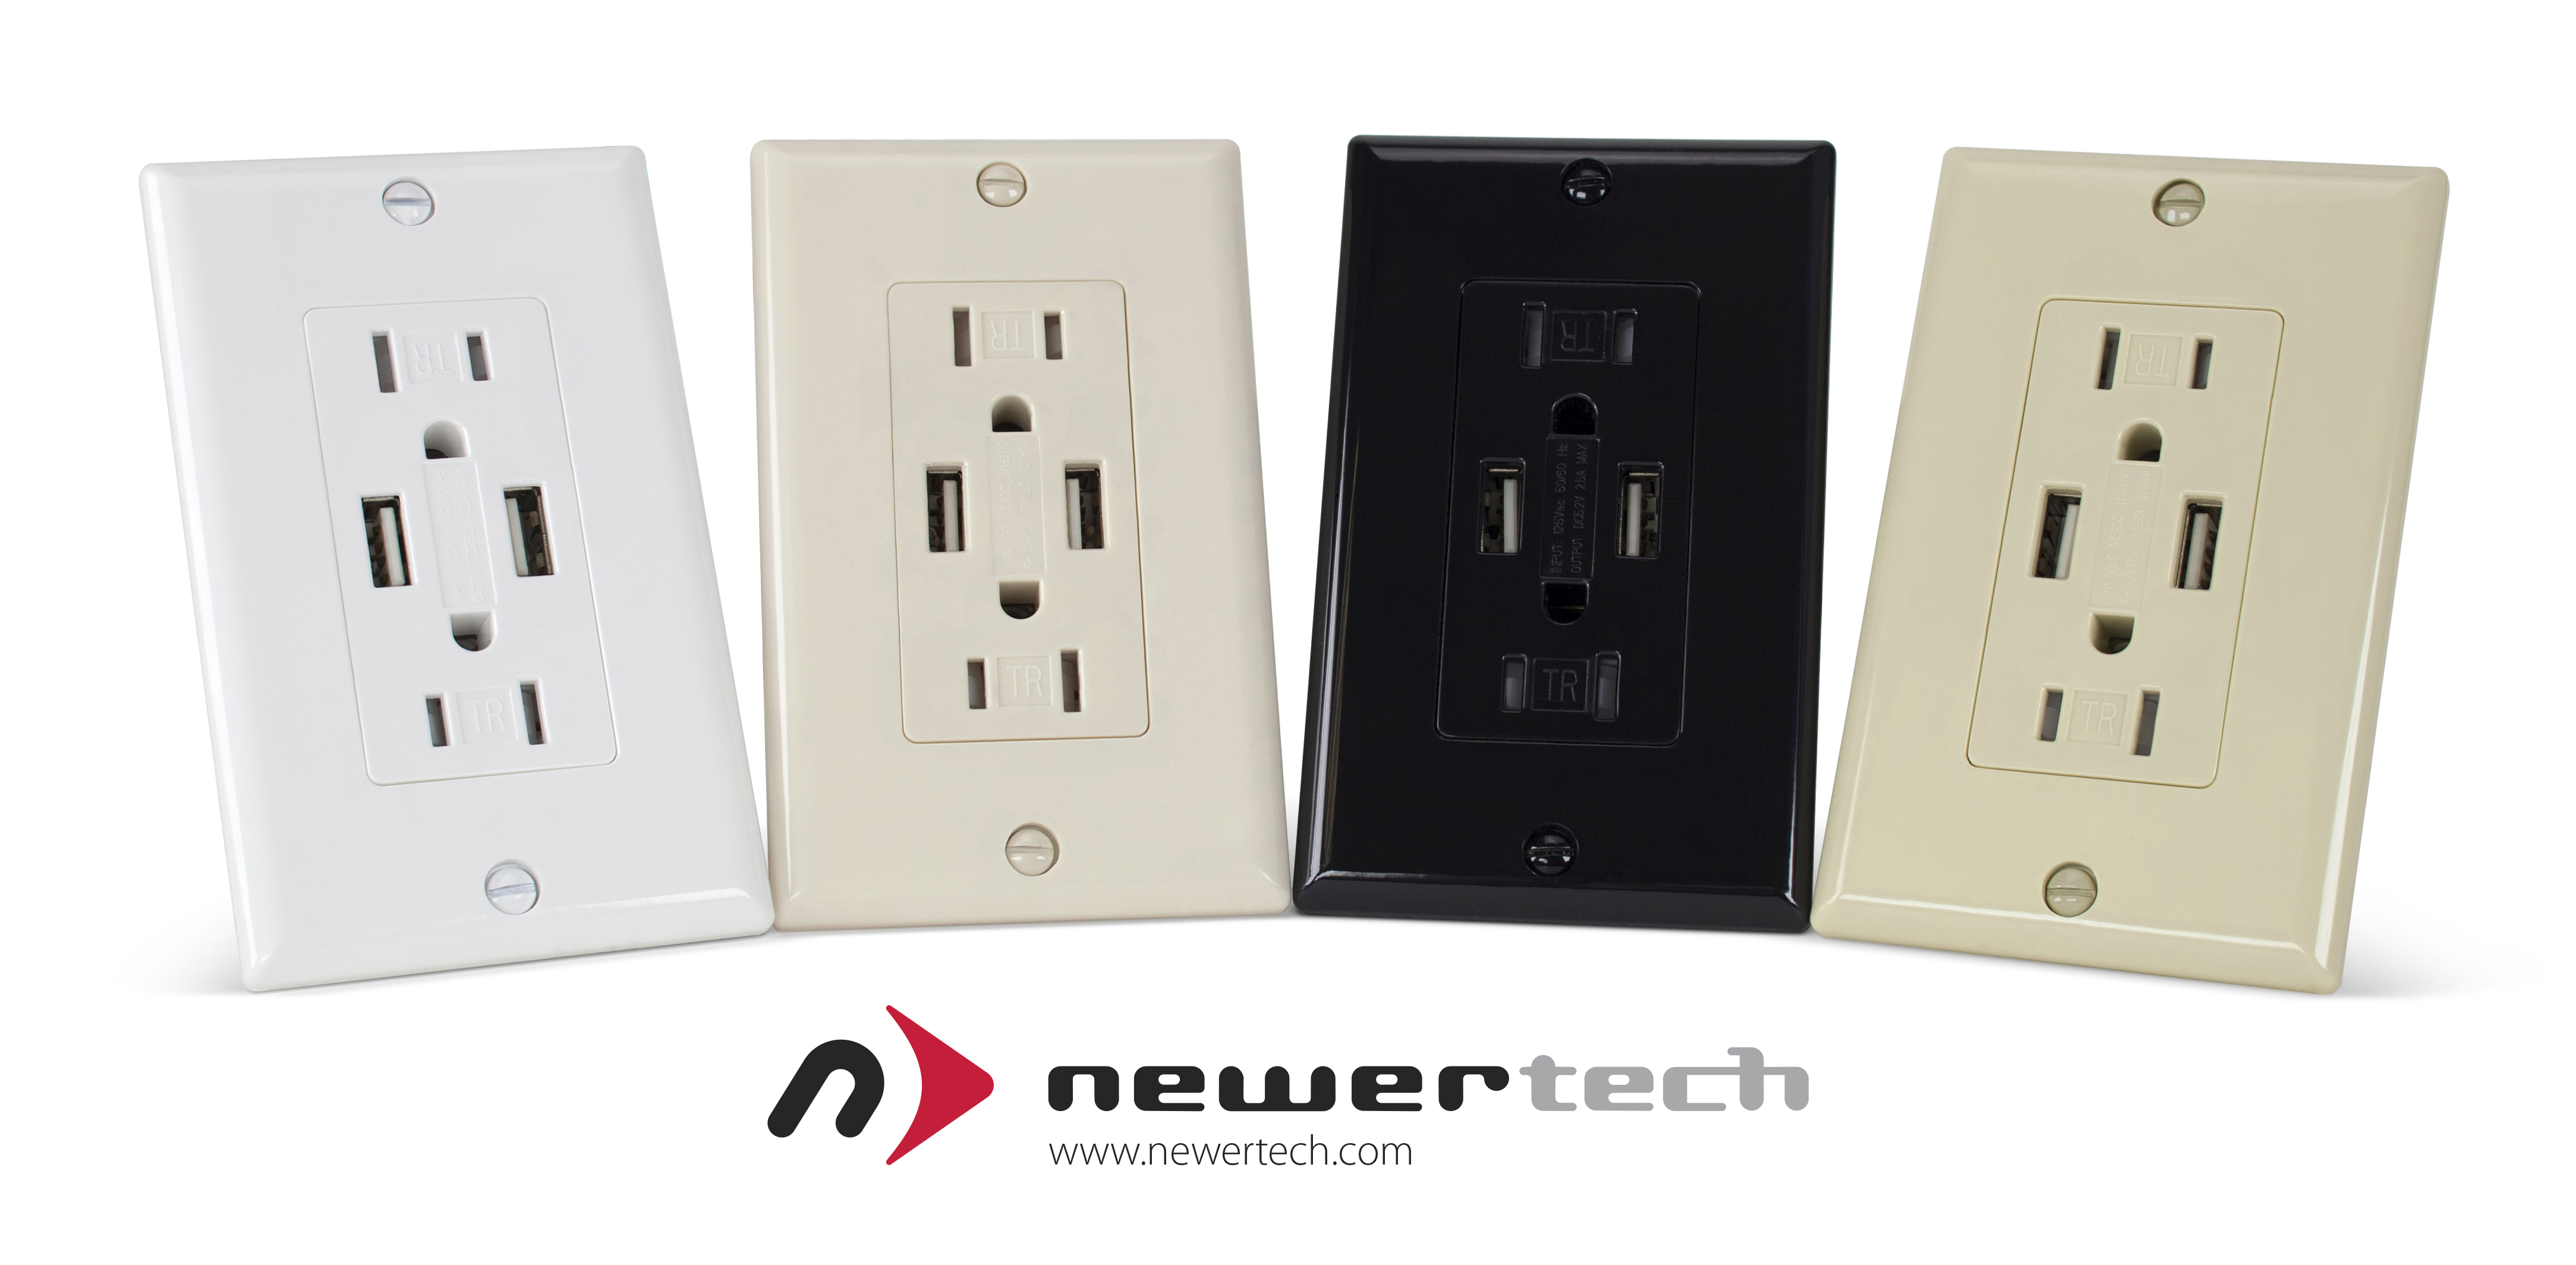 Next Generation NewerTech Power2U Dual USB Wall Outlet